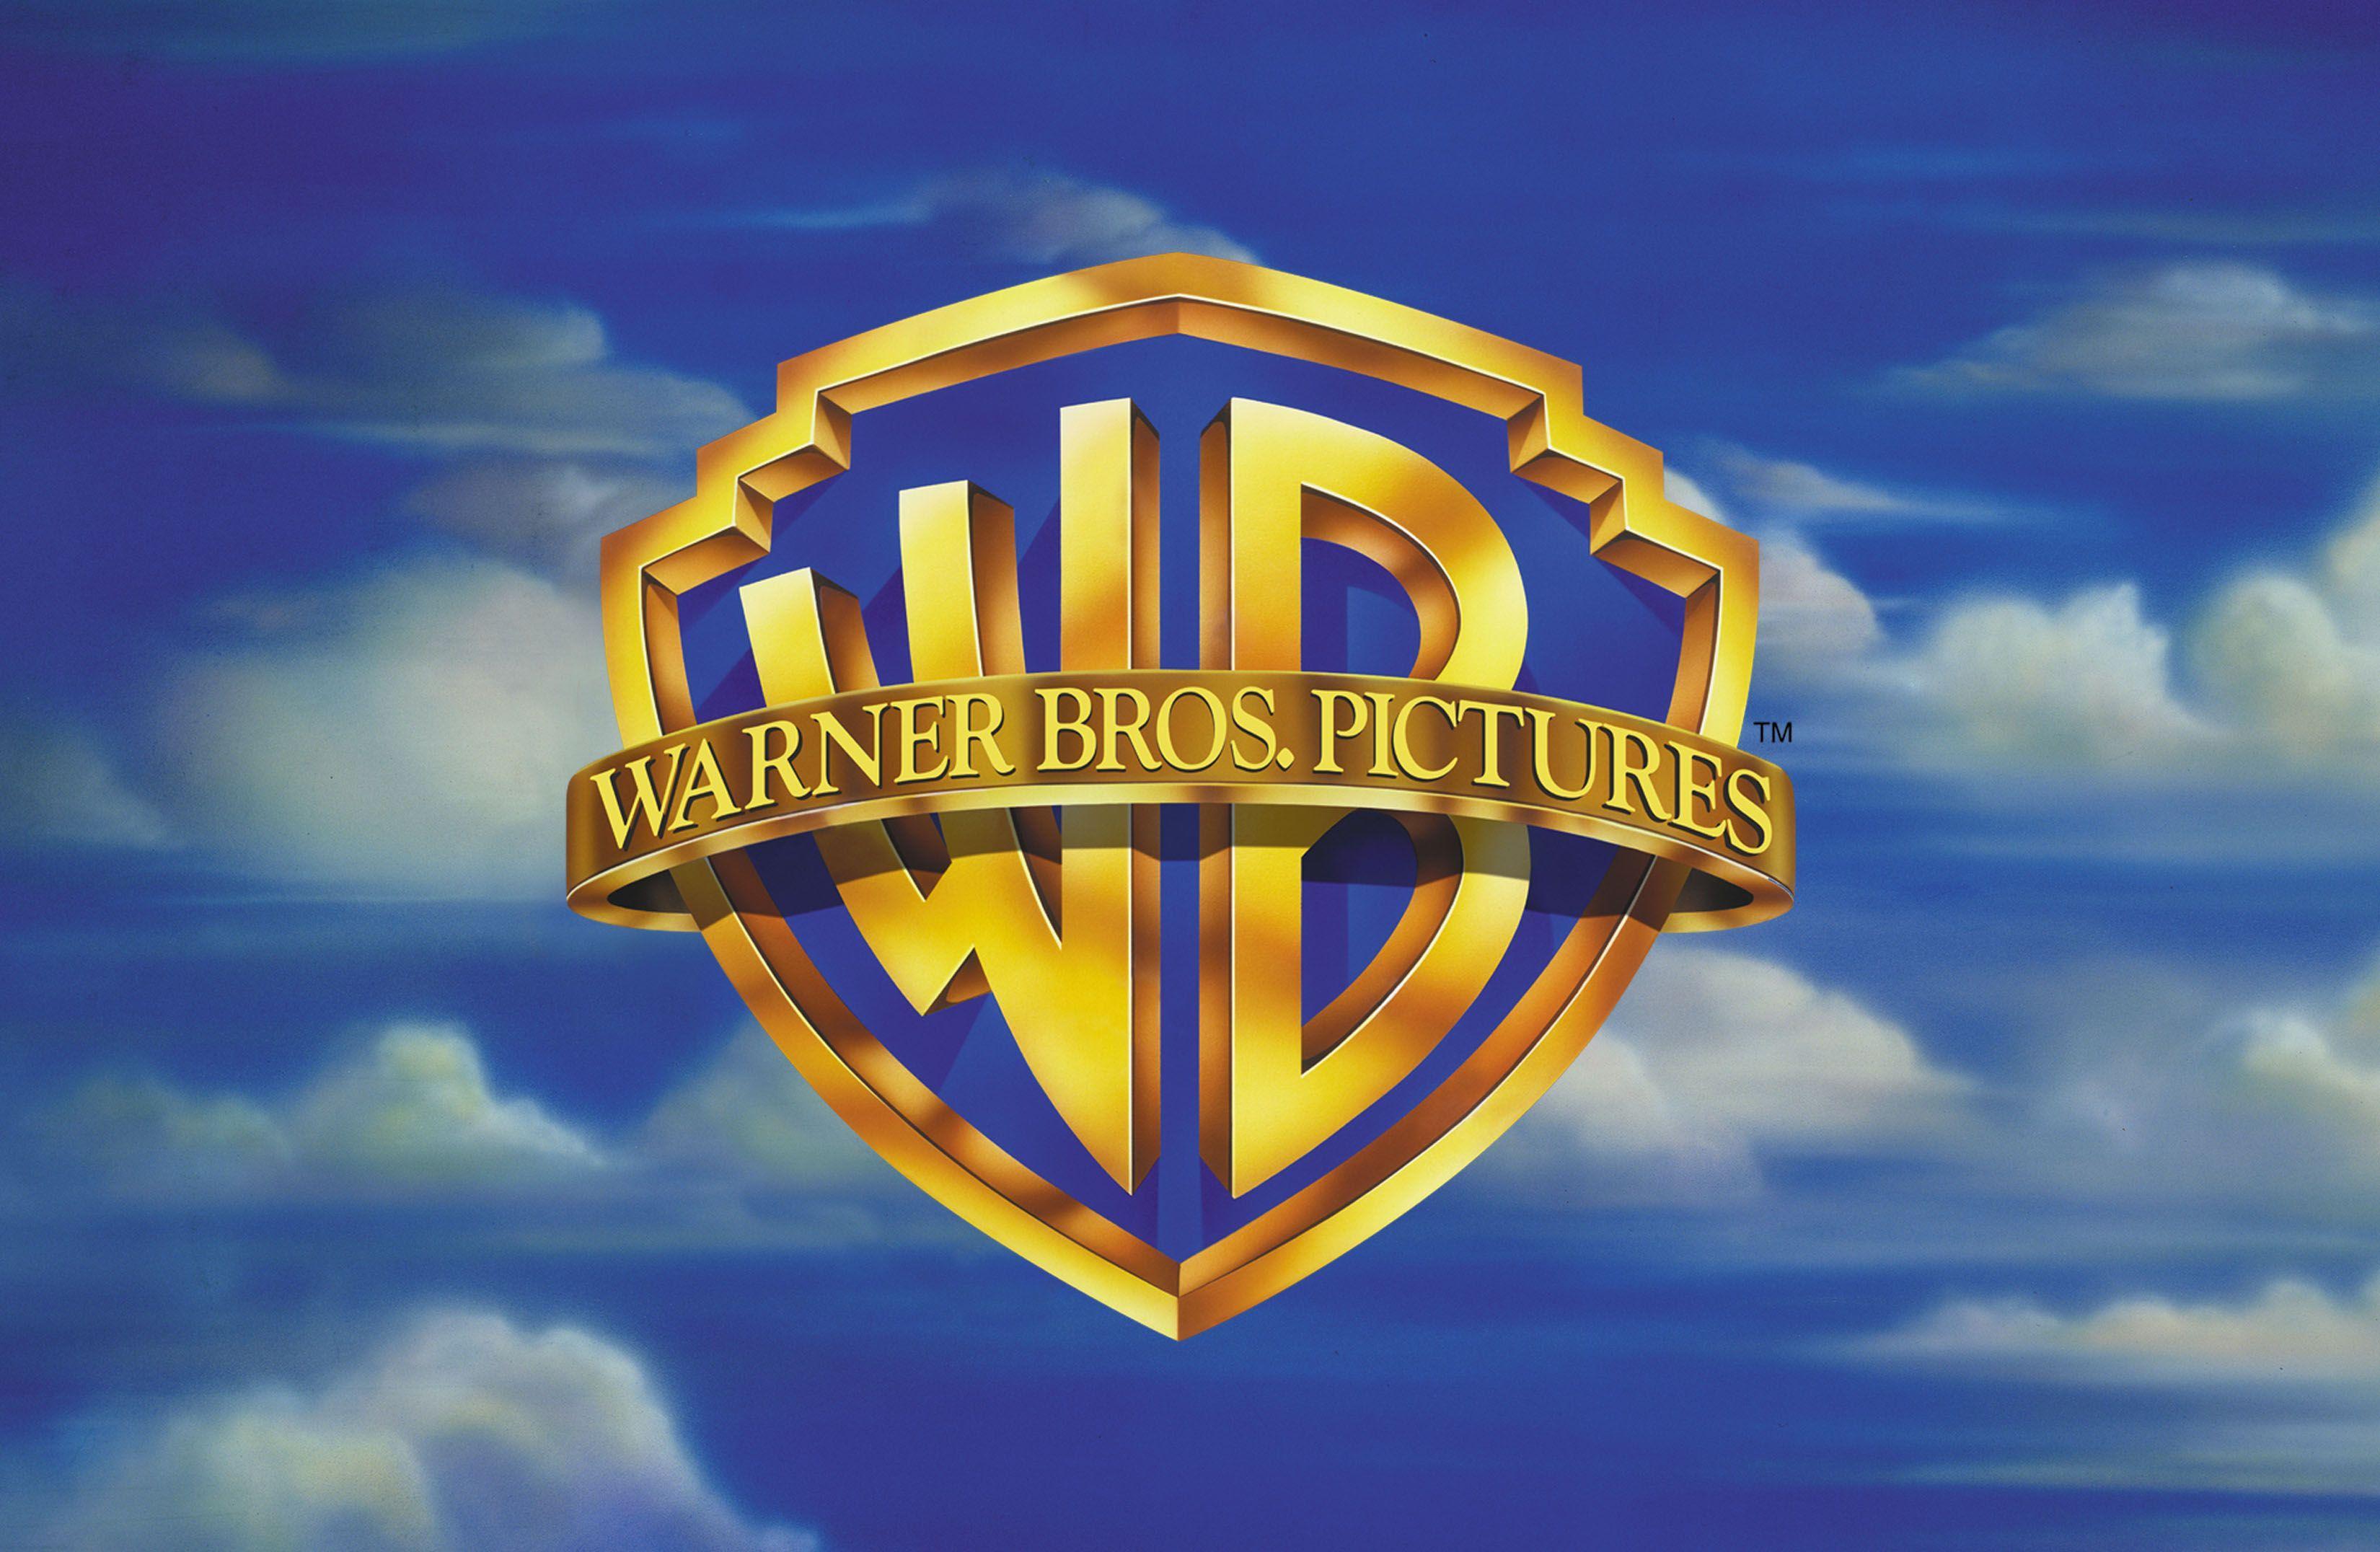 Wallpaper Logo, Warner, WB Games for mobile and desktop, section игры,  resolution 1920x1080 - download